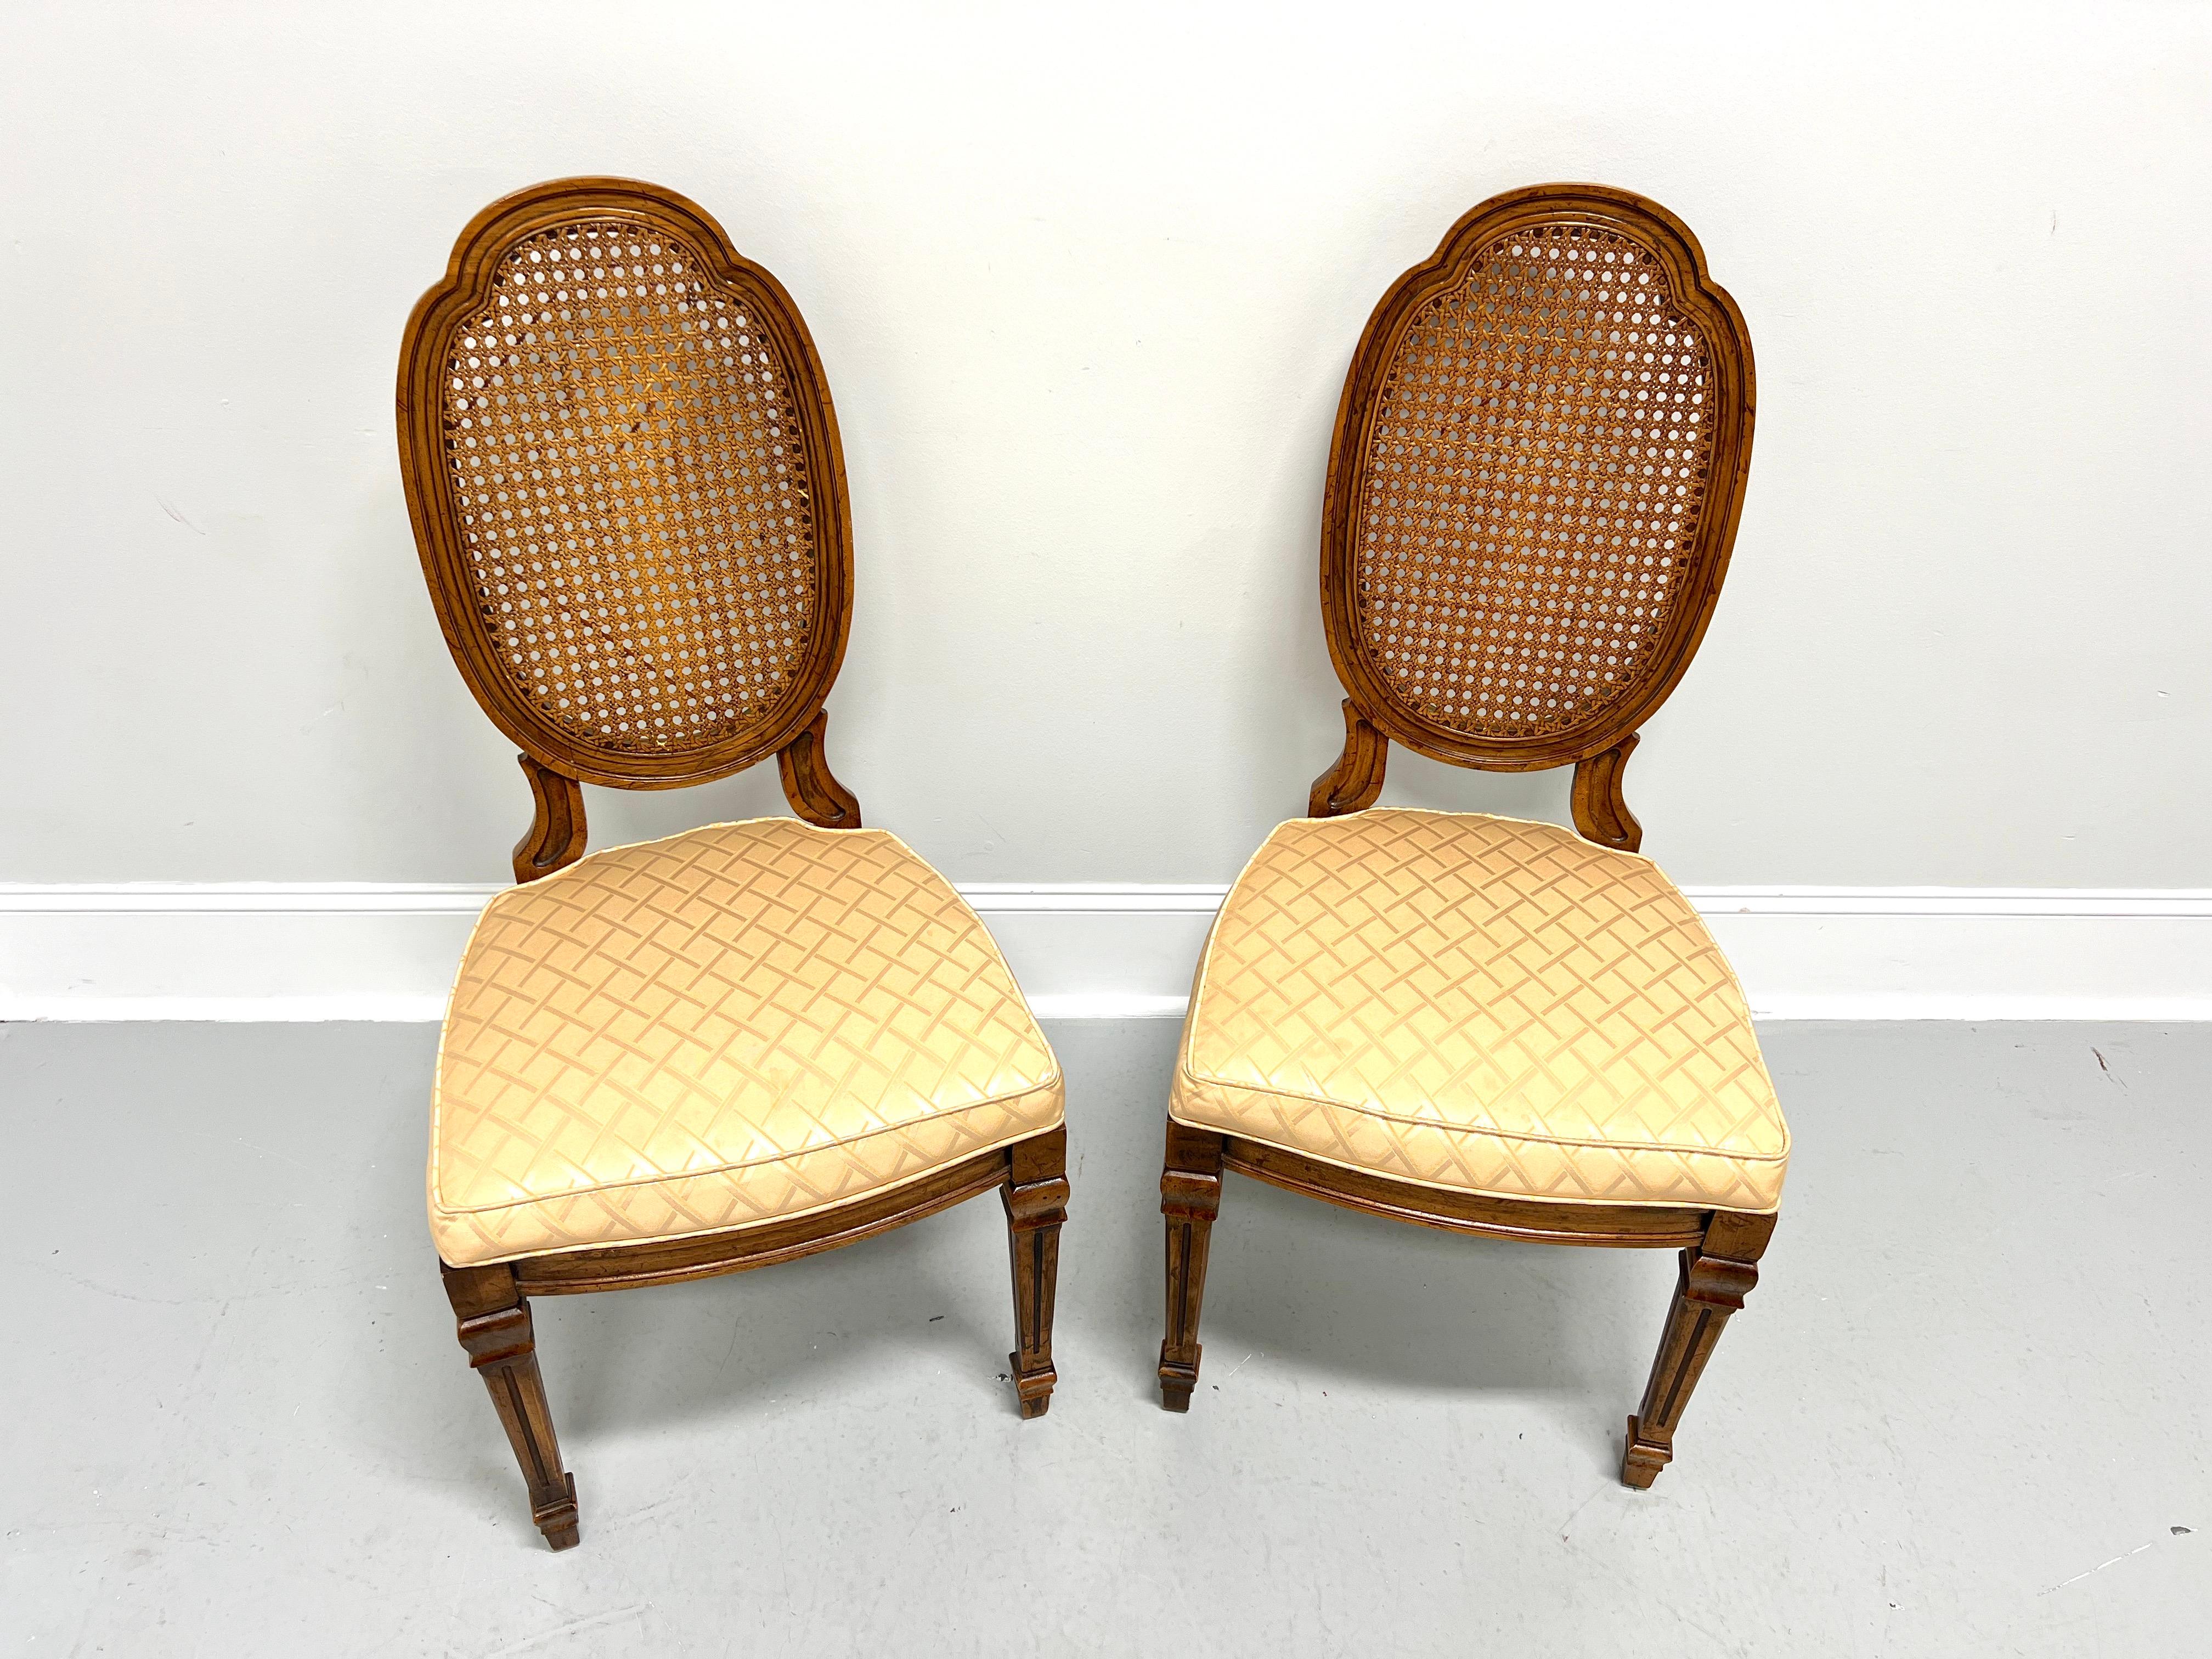 Une paire de chaises d'appoint de style Louis XVI de style provincial français par Drexel Heritage. Noyer au fini légèrement vieilli, dossiers ovales sculptés en forme de bouclier, sièges rembourrés en tissu à motif de diamants de couleur dorée,